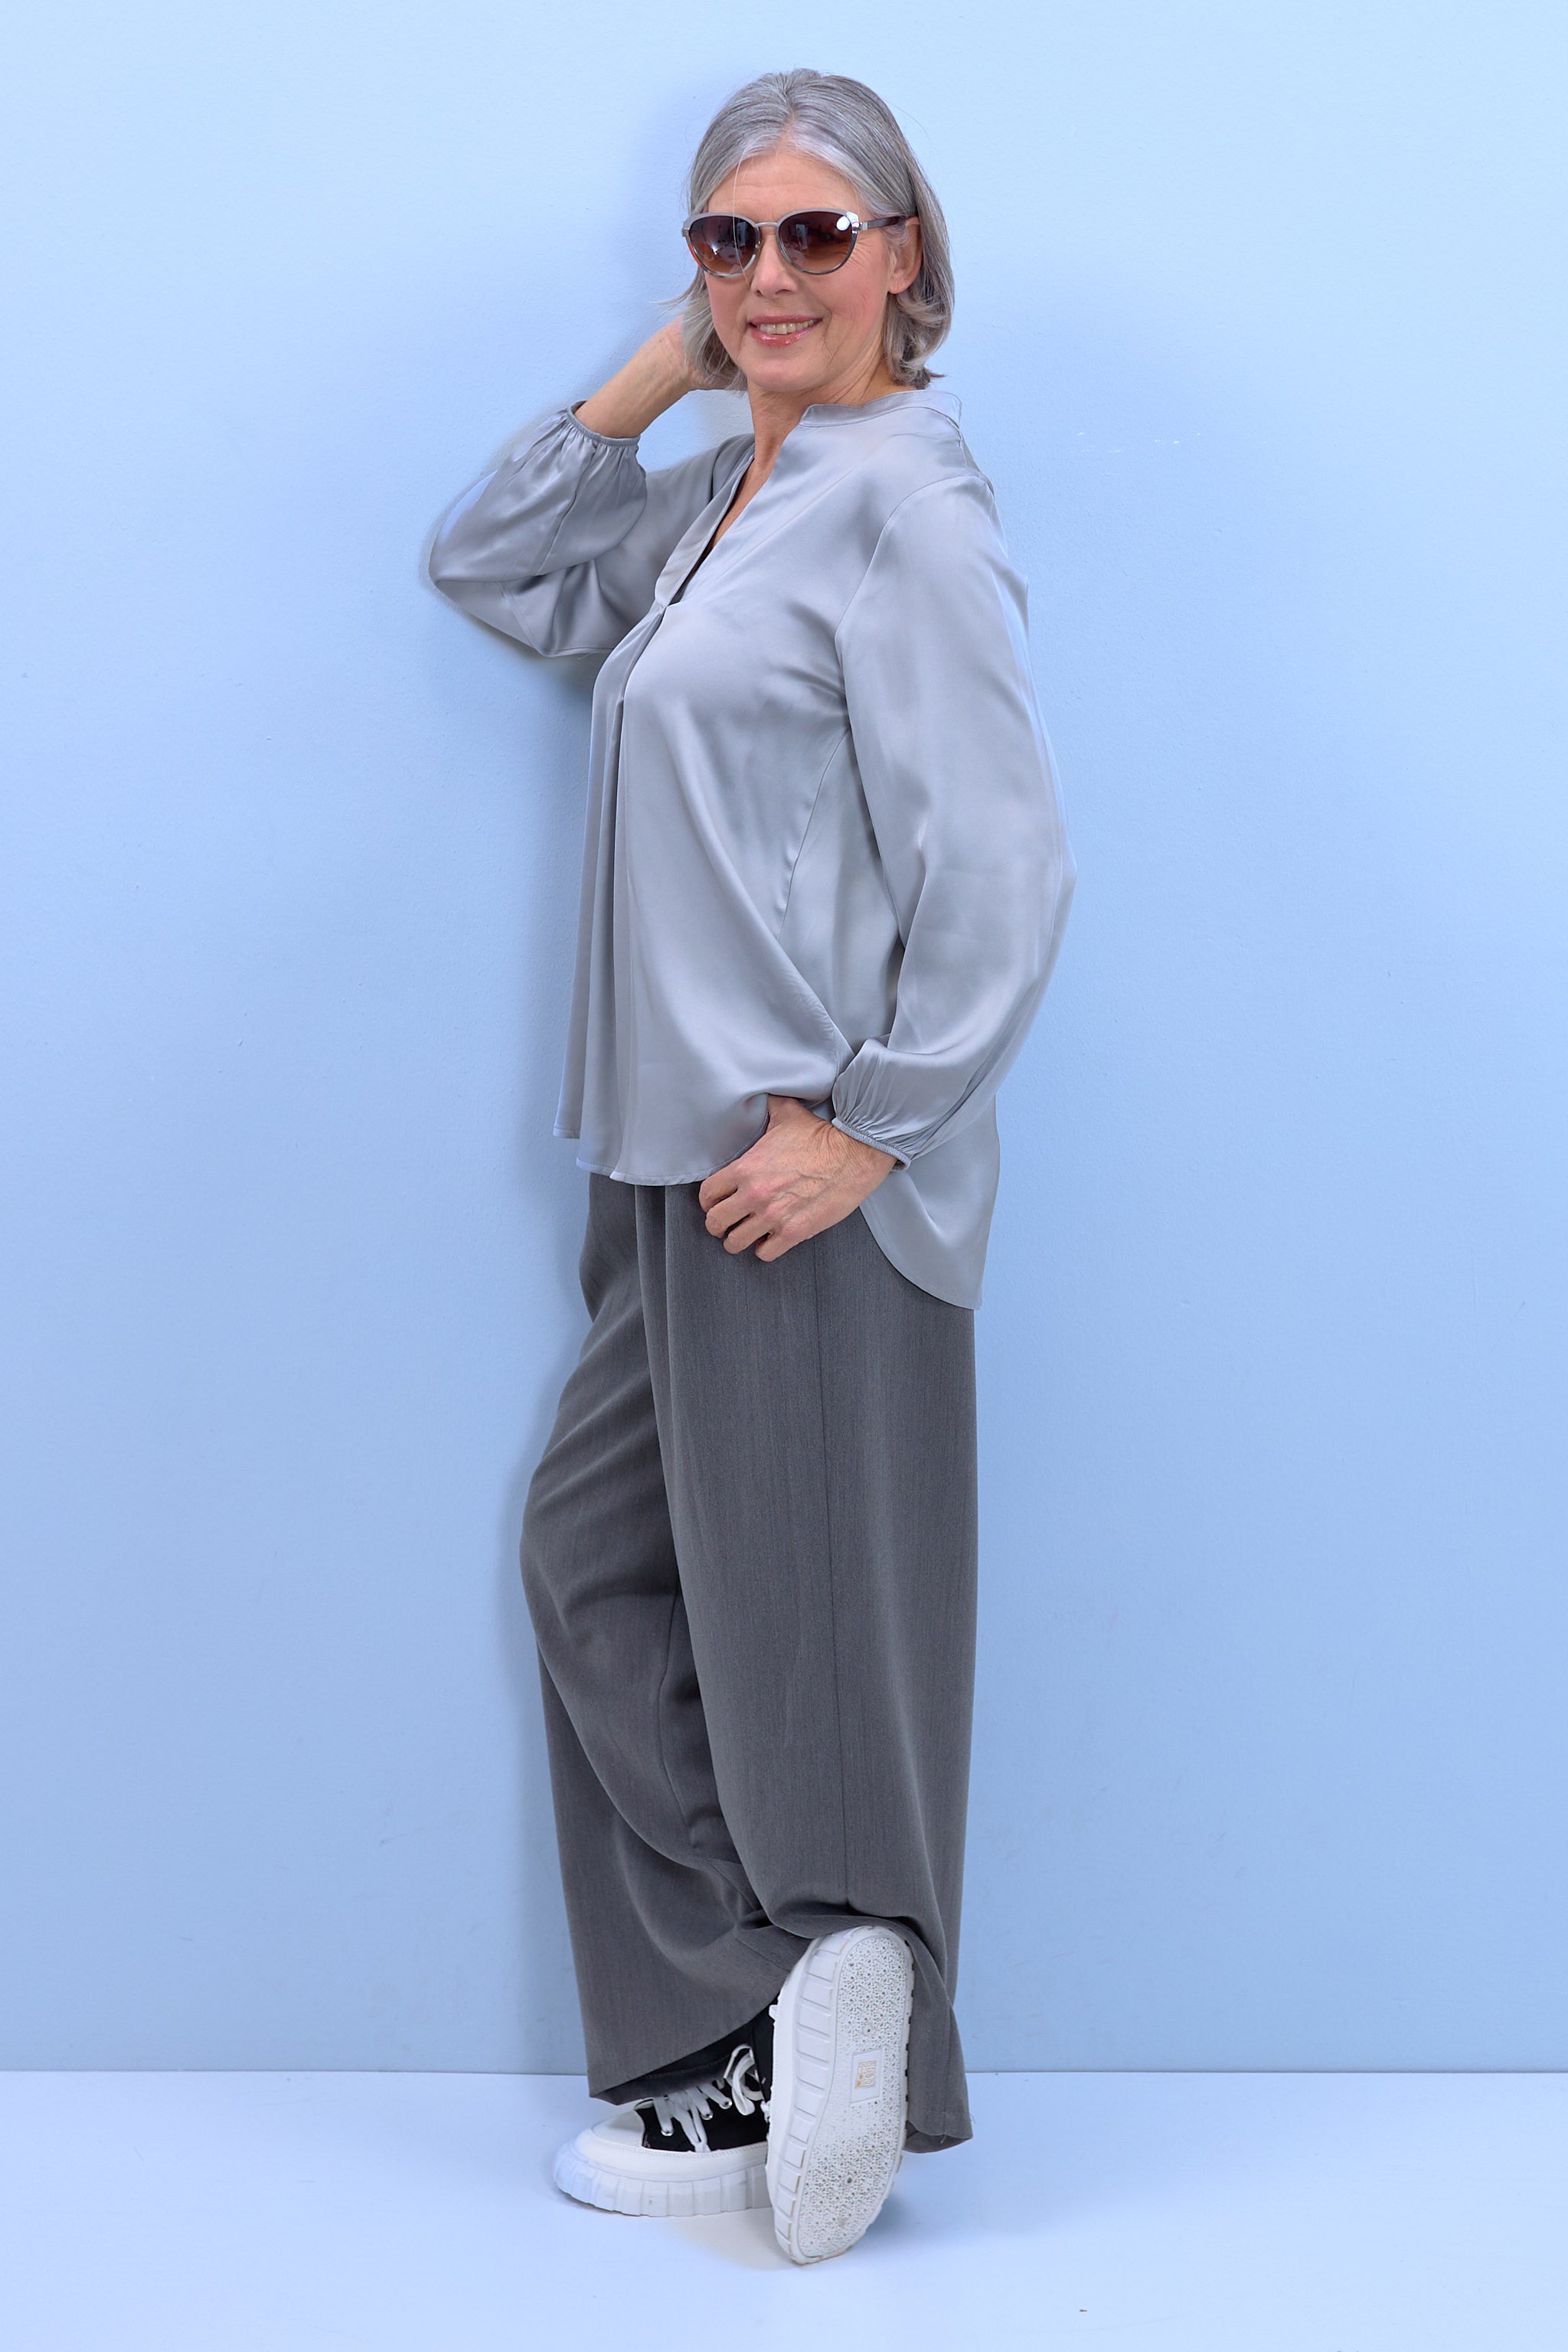 Bluse aus Glanzstoff mit V-Ausschnitt, silber-grau